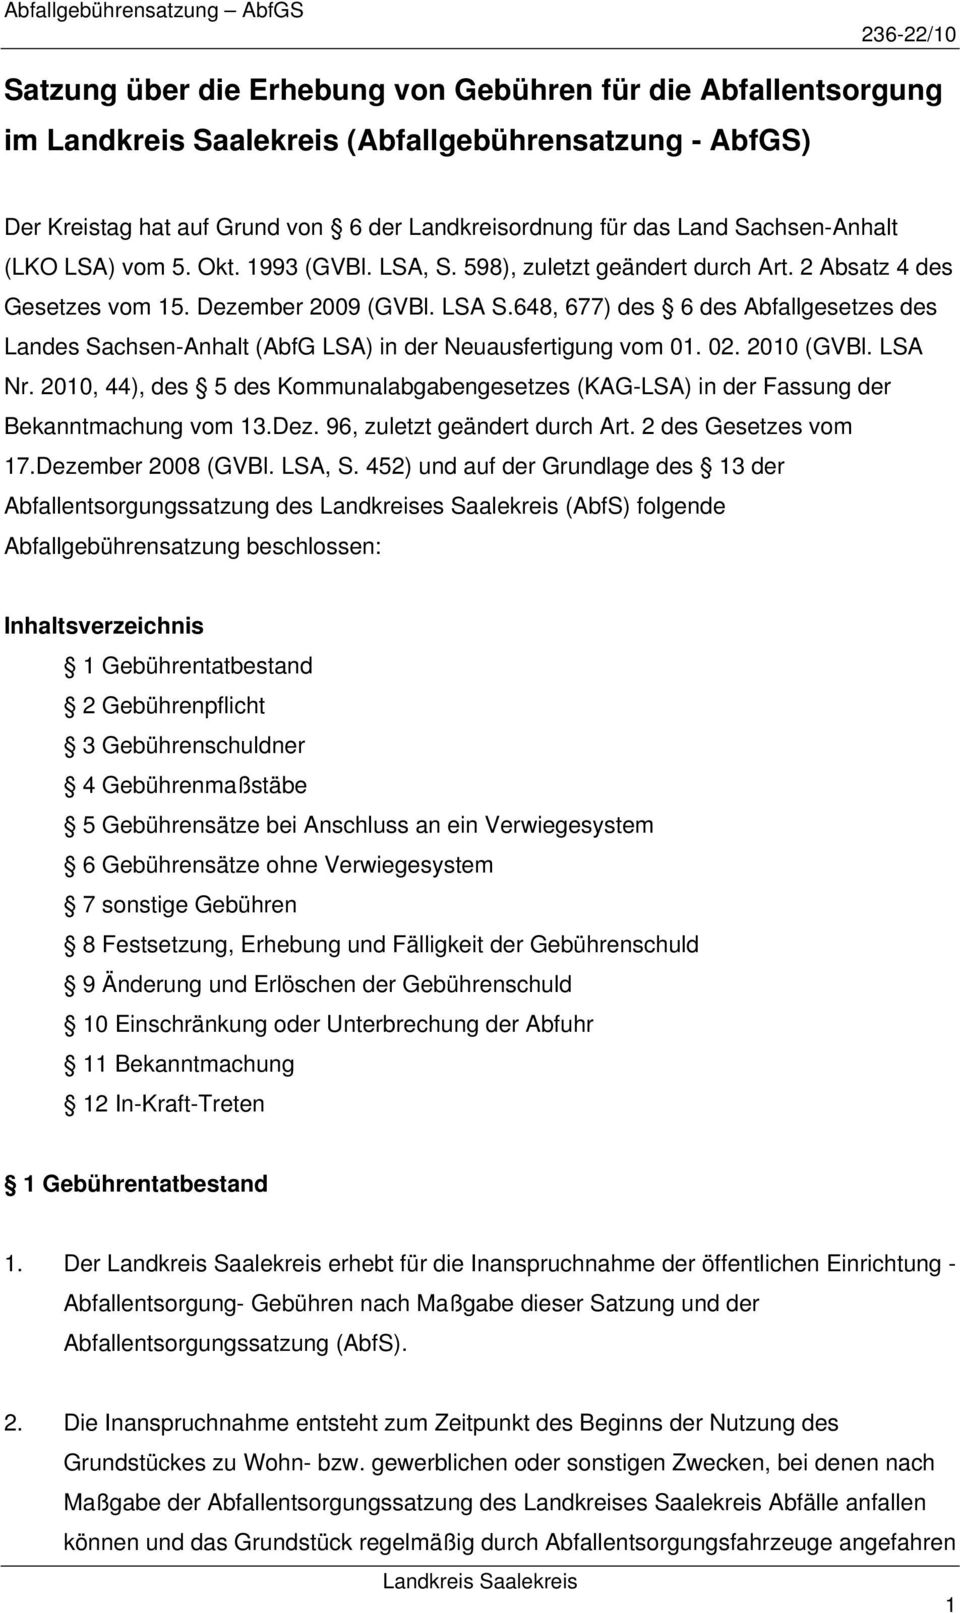 648, 677) des 6 des Abfallgesetzes des Landes Sachsen-Anhalt (AbfG LSA) in der Neuausfertigung vom 01. 02. 2010 (GVBl. LSA Nr.